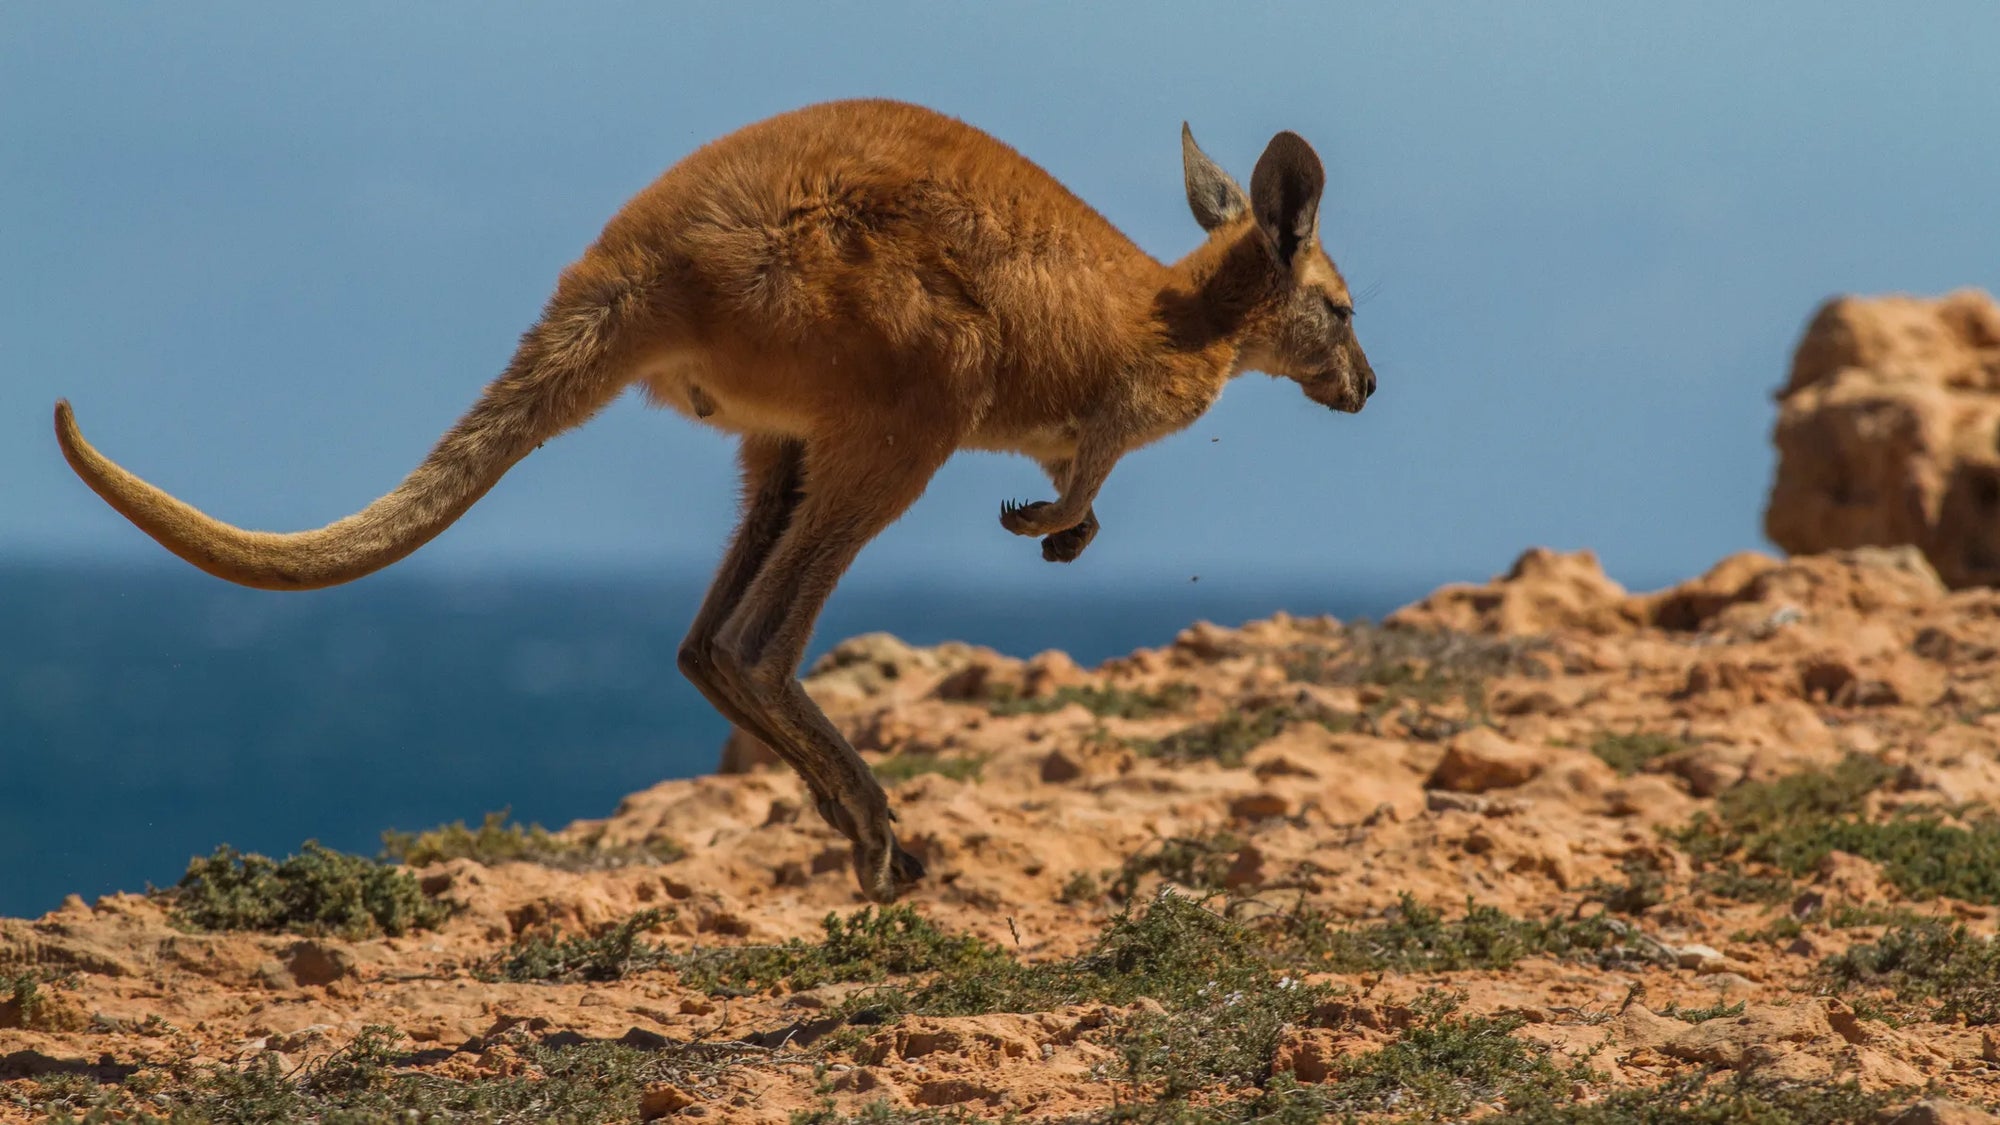 Australia's favourite hopper